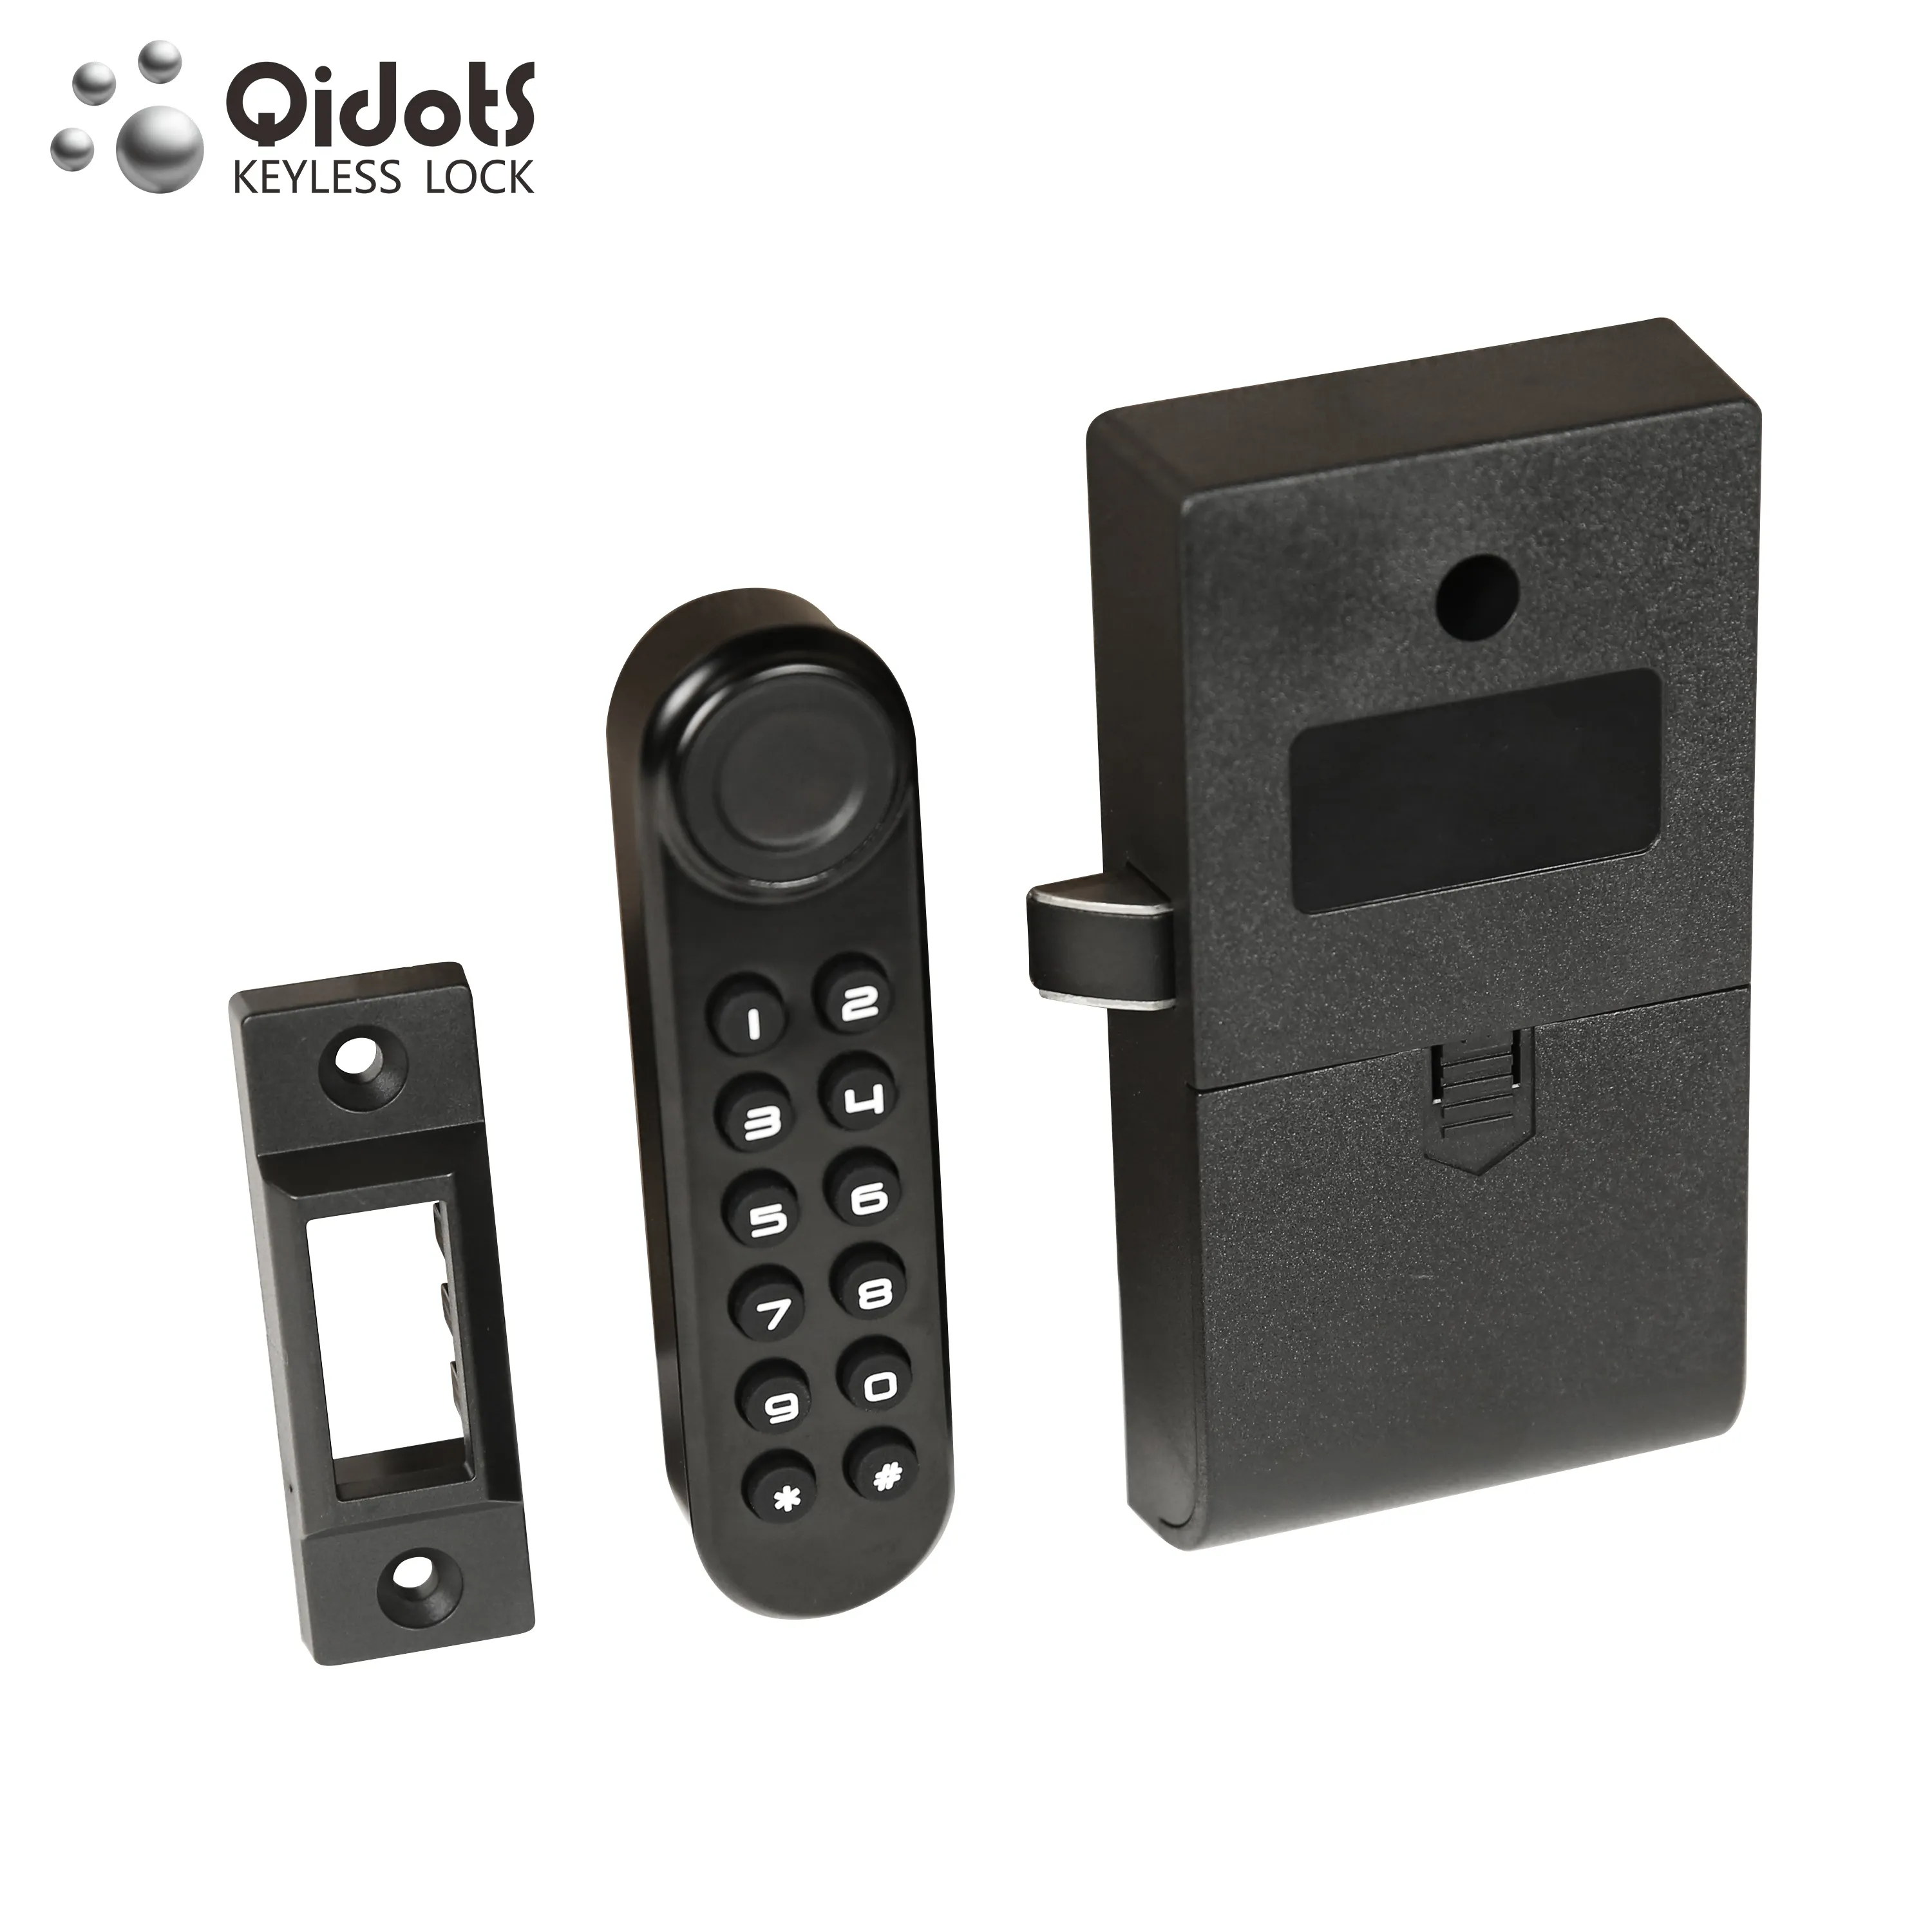 Qidots ตัวล็อกประตูสำนักงาน,ล็อกประตูตู้ใส่รหัสผ่านพิมพ์ลายนิ้วมือพร้อมรหัส